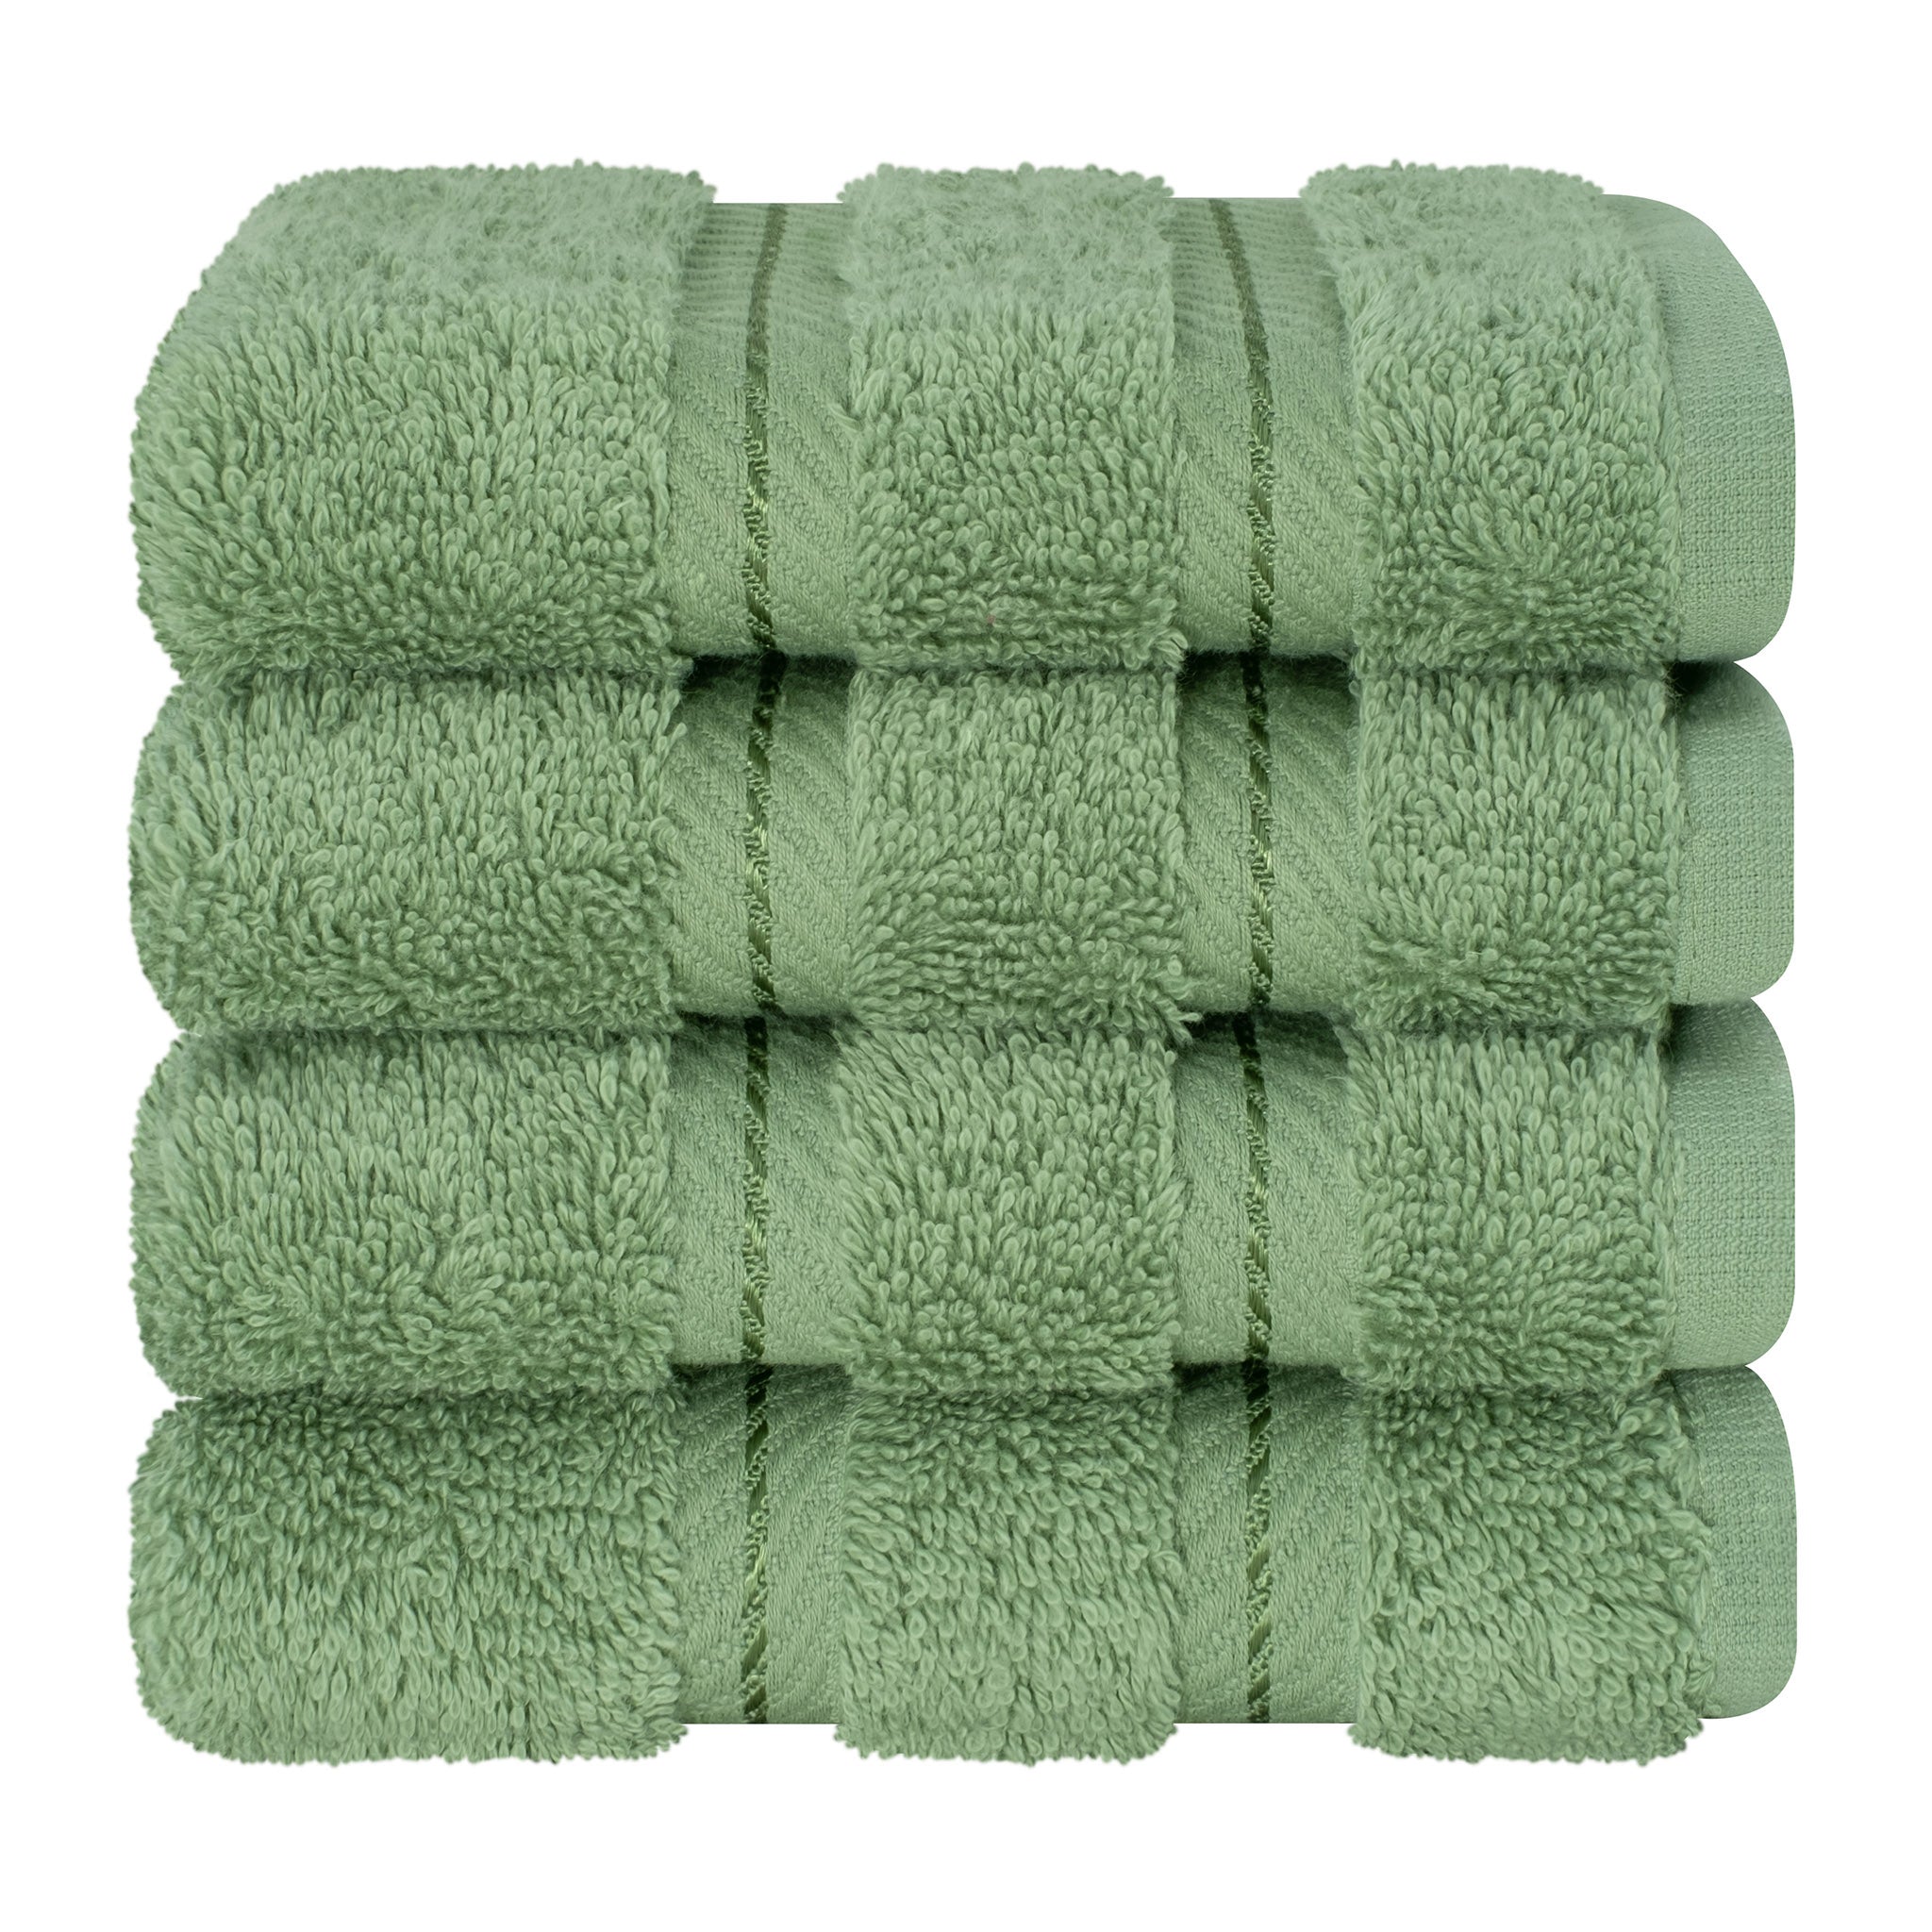  American Soft Linen 100% Turkish Cotton 4 Piece Washcloth Set - Wholesale - sage-green-7